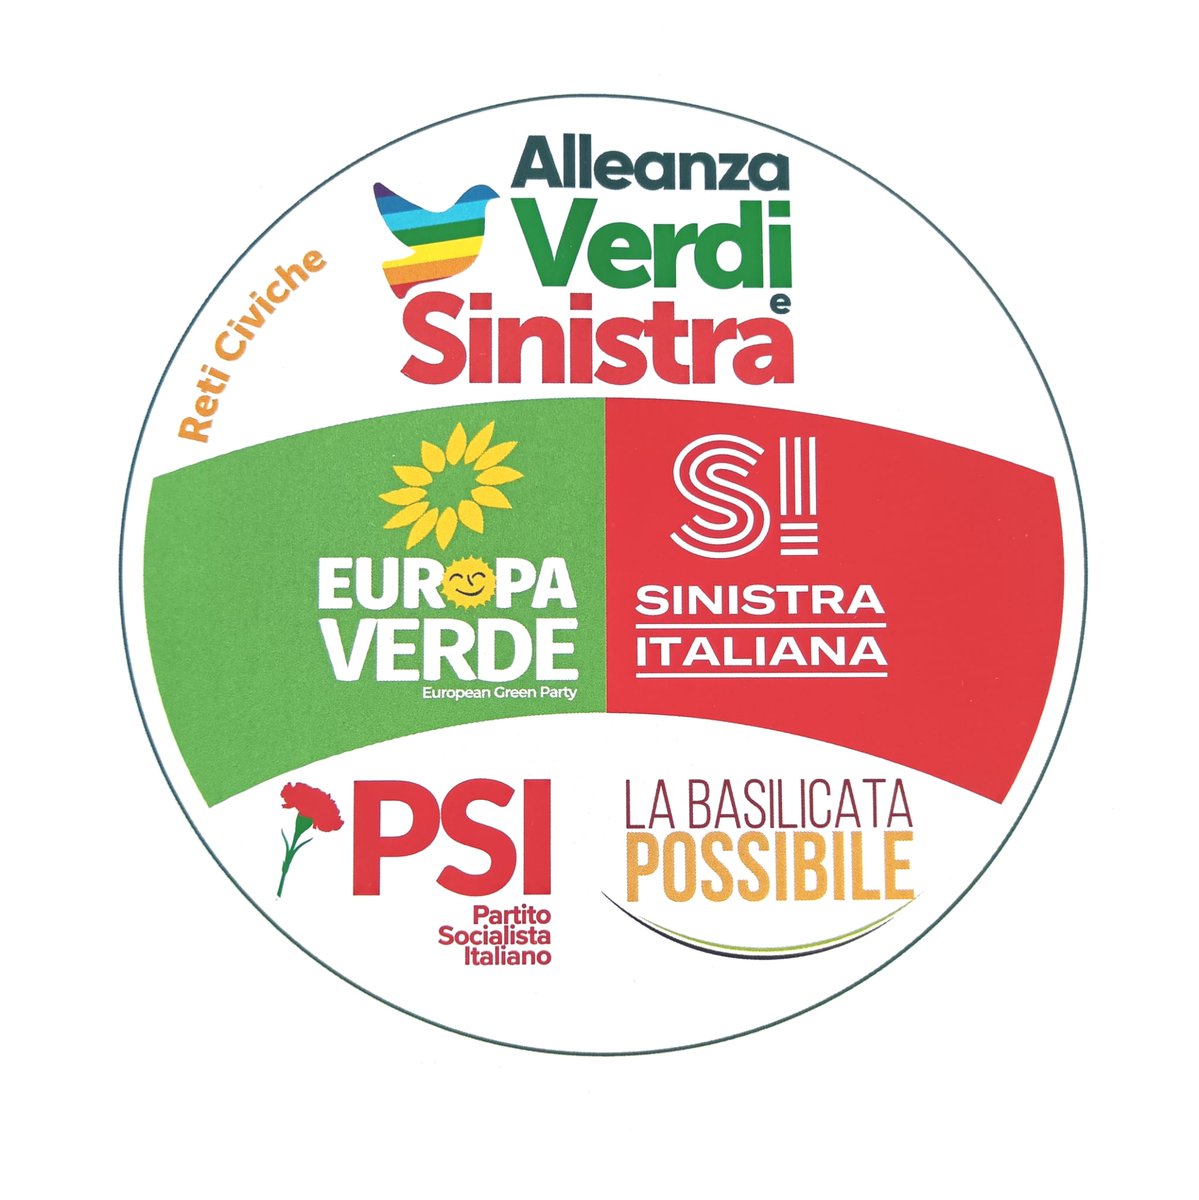 Di per sè il risultato di AVS in Basilicata (5.8%) è una buona notizia, purtroppo l'unico eletto che andrà in consiglio regionale è del PSI, che è stato la stampella di Renzi e con il quale è alleato alle europee. La disinvoltura di AVS nelle alleanze ha anche effetti negativi